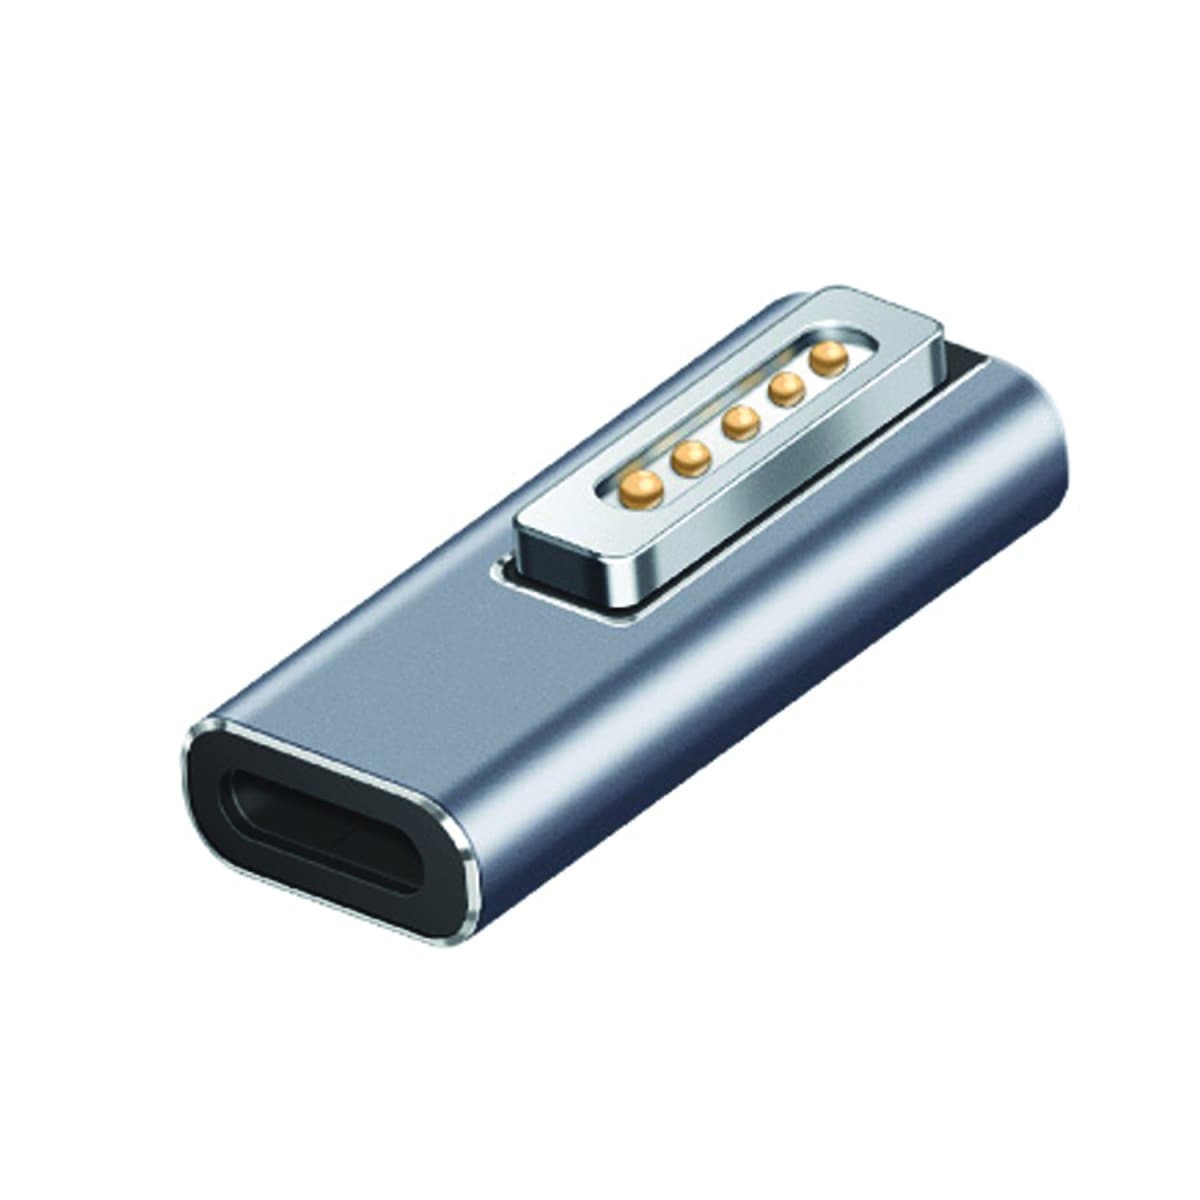 4smarts Adapter »USB-C PD 100W auf MagSafe 2«, MagSafe 2 kompatibel, für MacBook Pro und MacBook Air